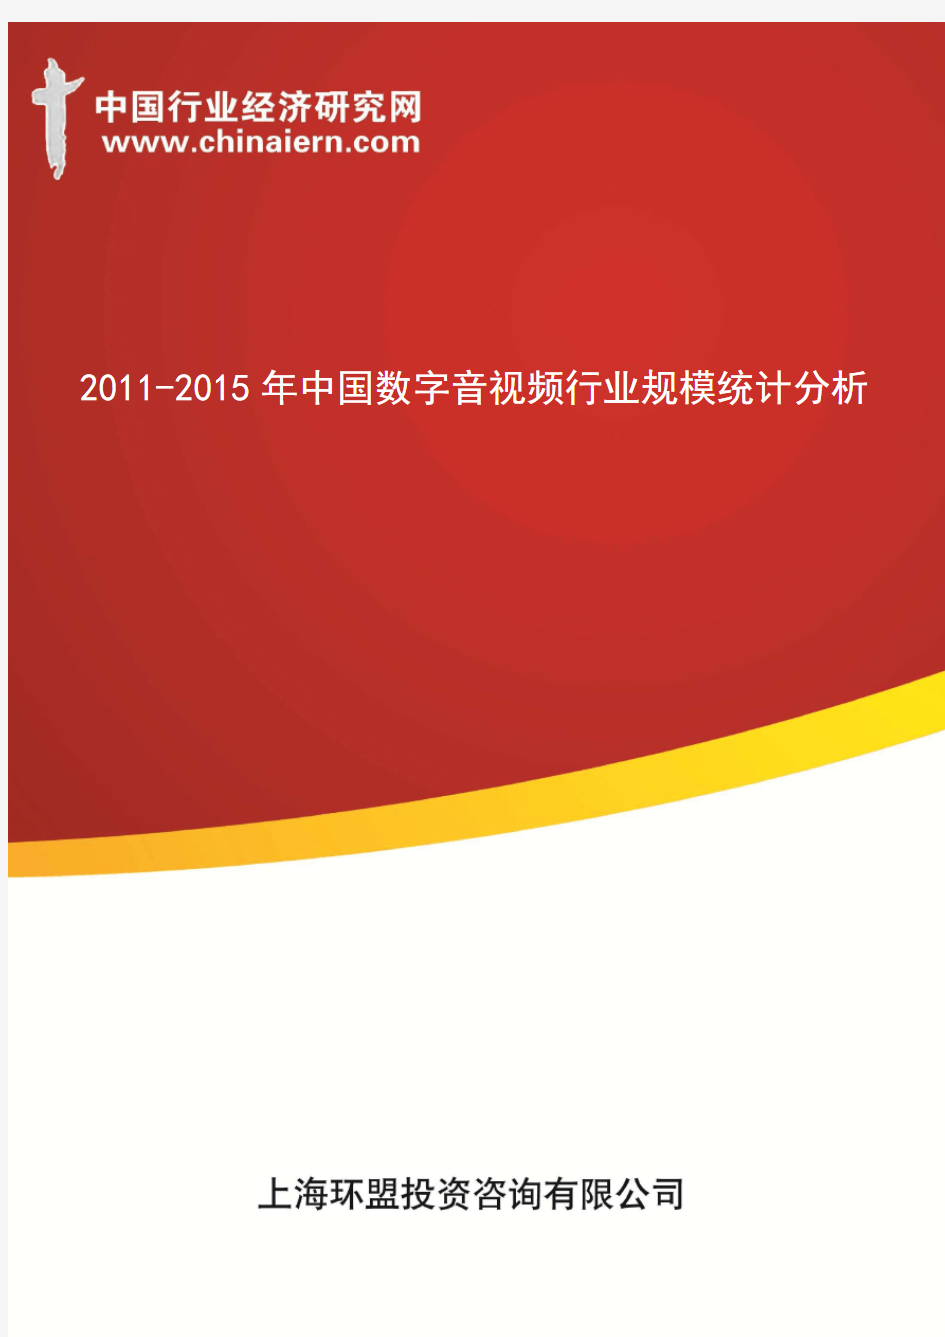 (上海环盟咨询)2011-2015年中国数字音视频行业规模统计分析